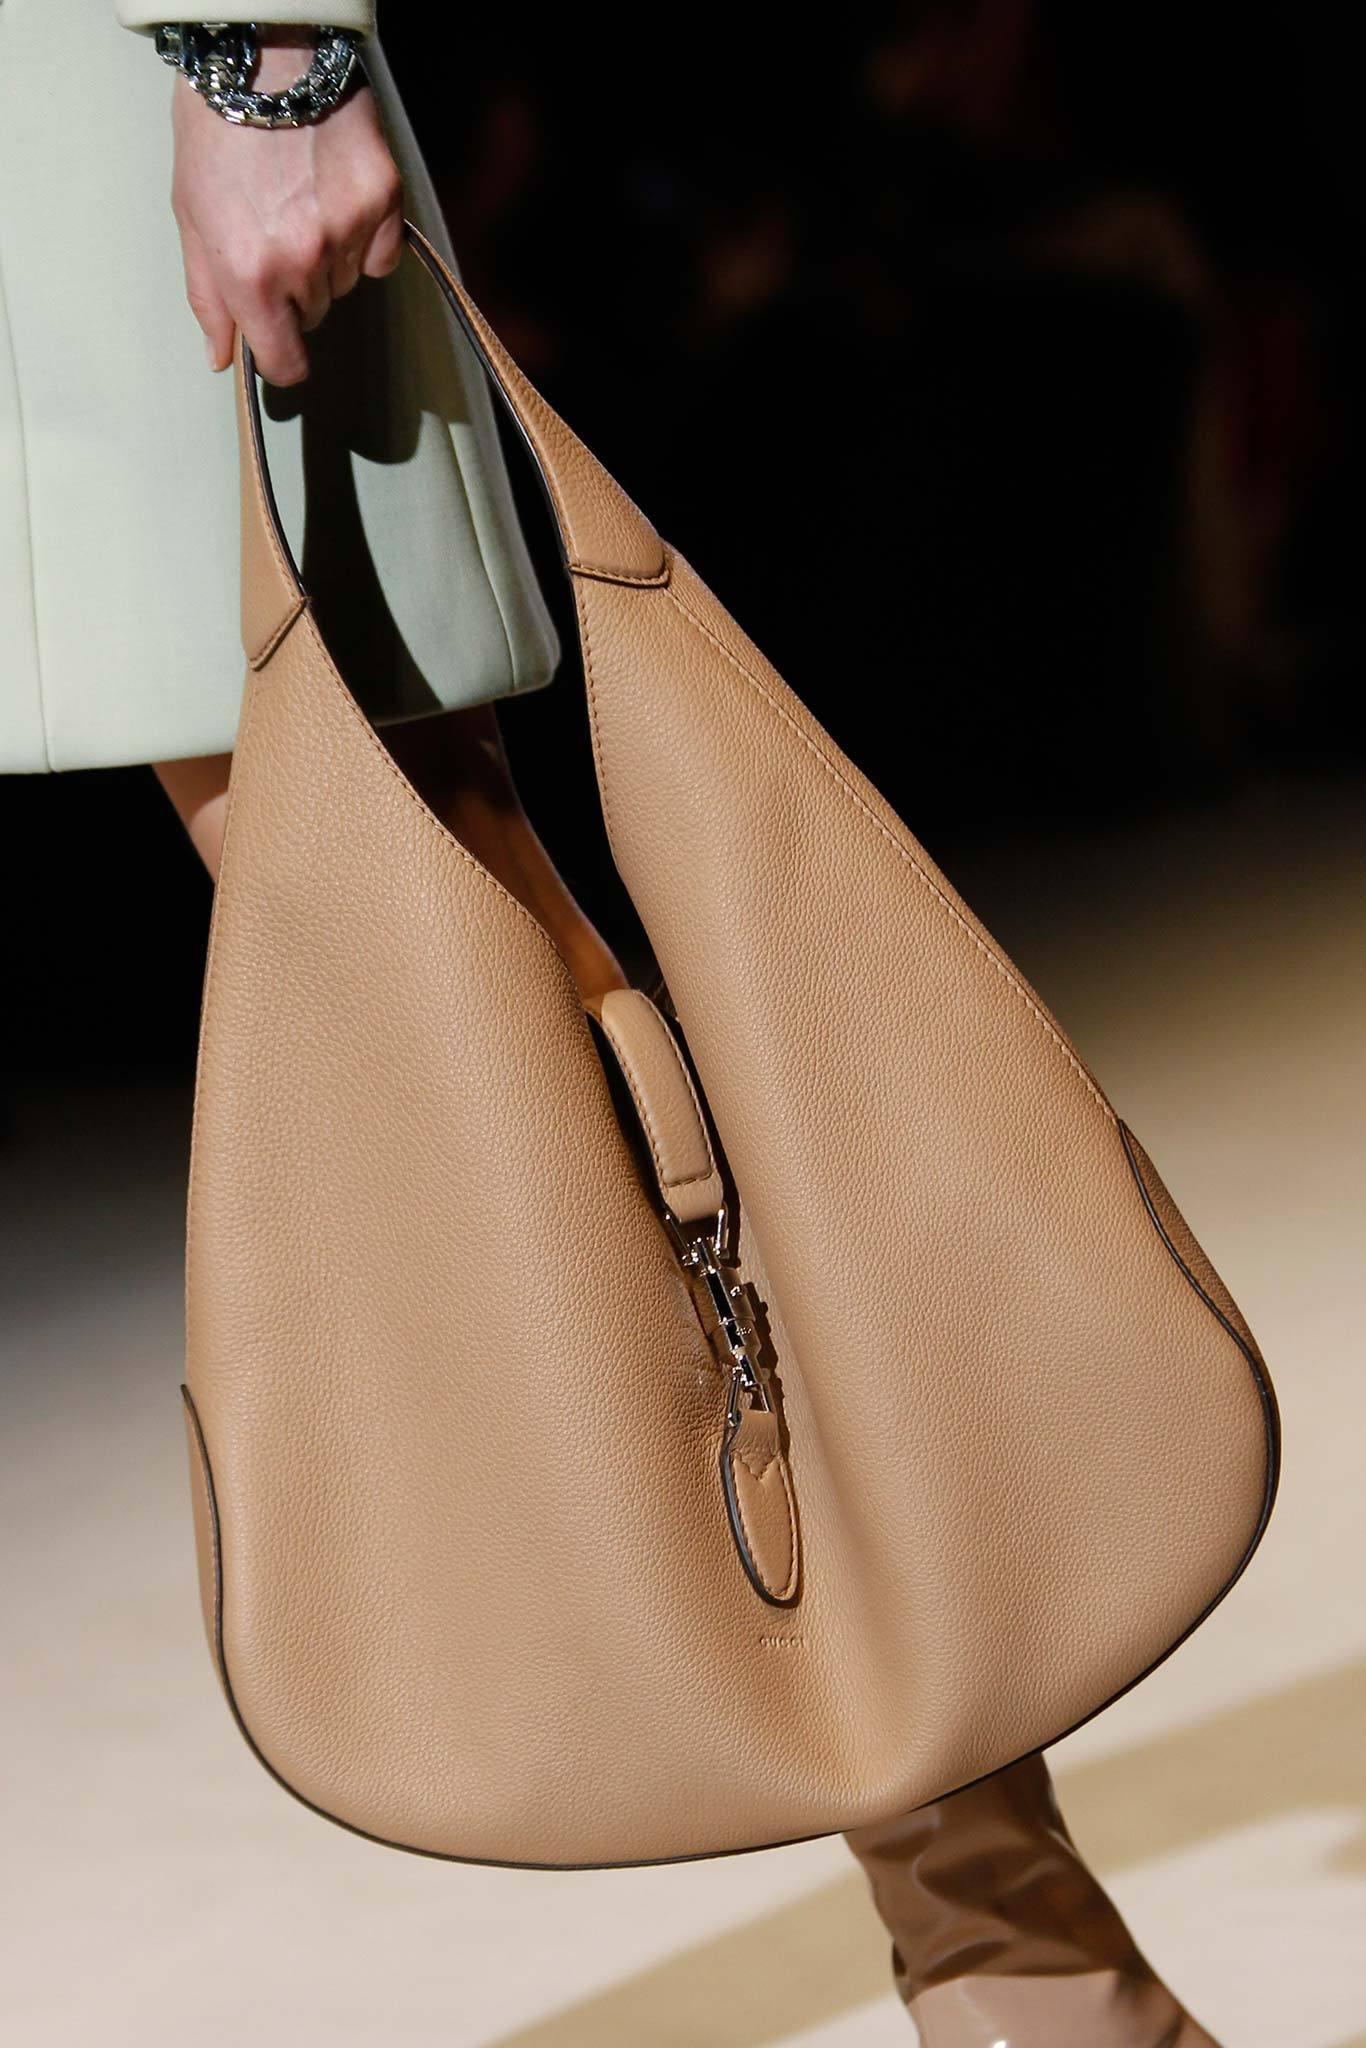 Nouveauté Gucci extra large sac Jackie O Gaga en cuir rose 3595 $ automne 2014 en vente 14